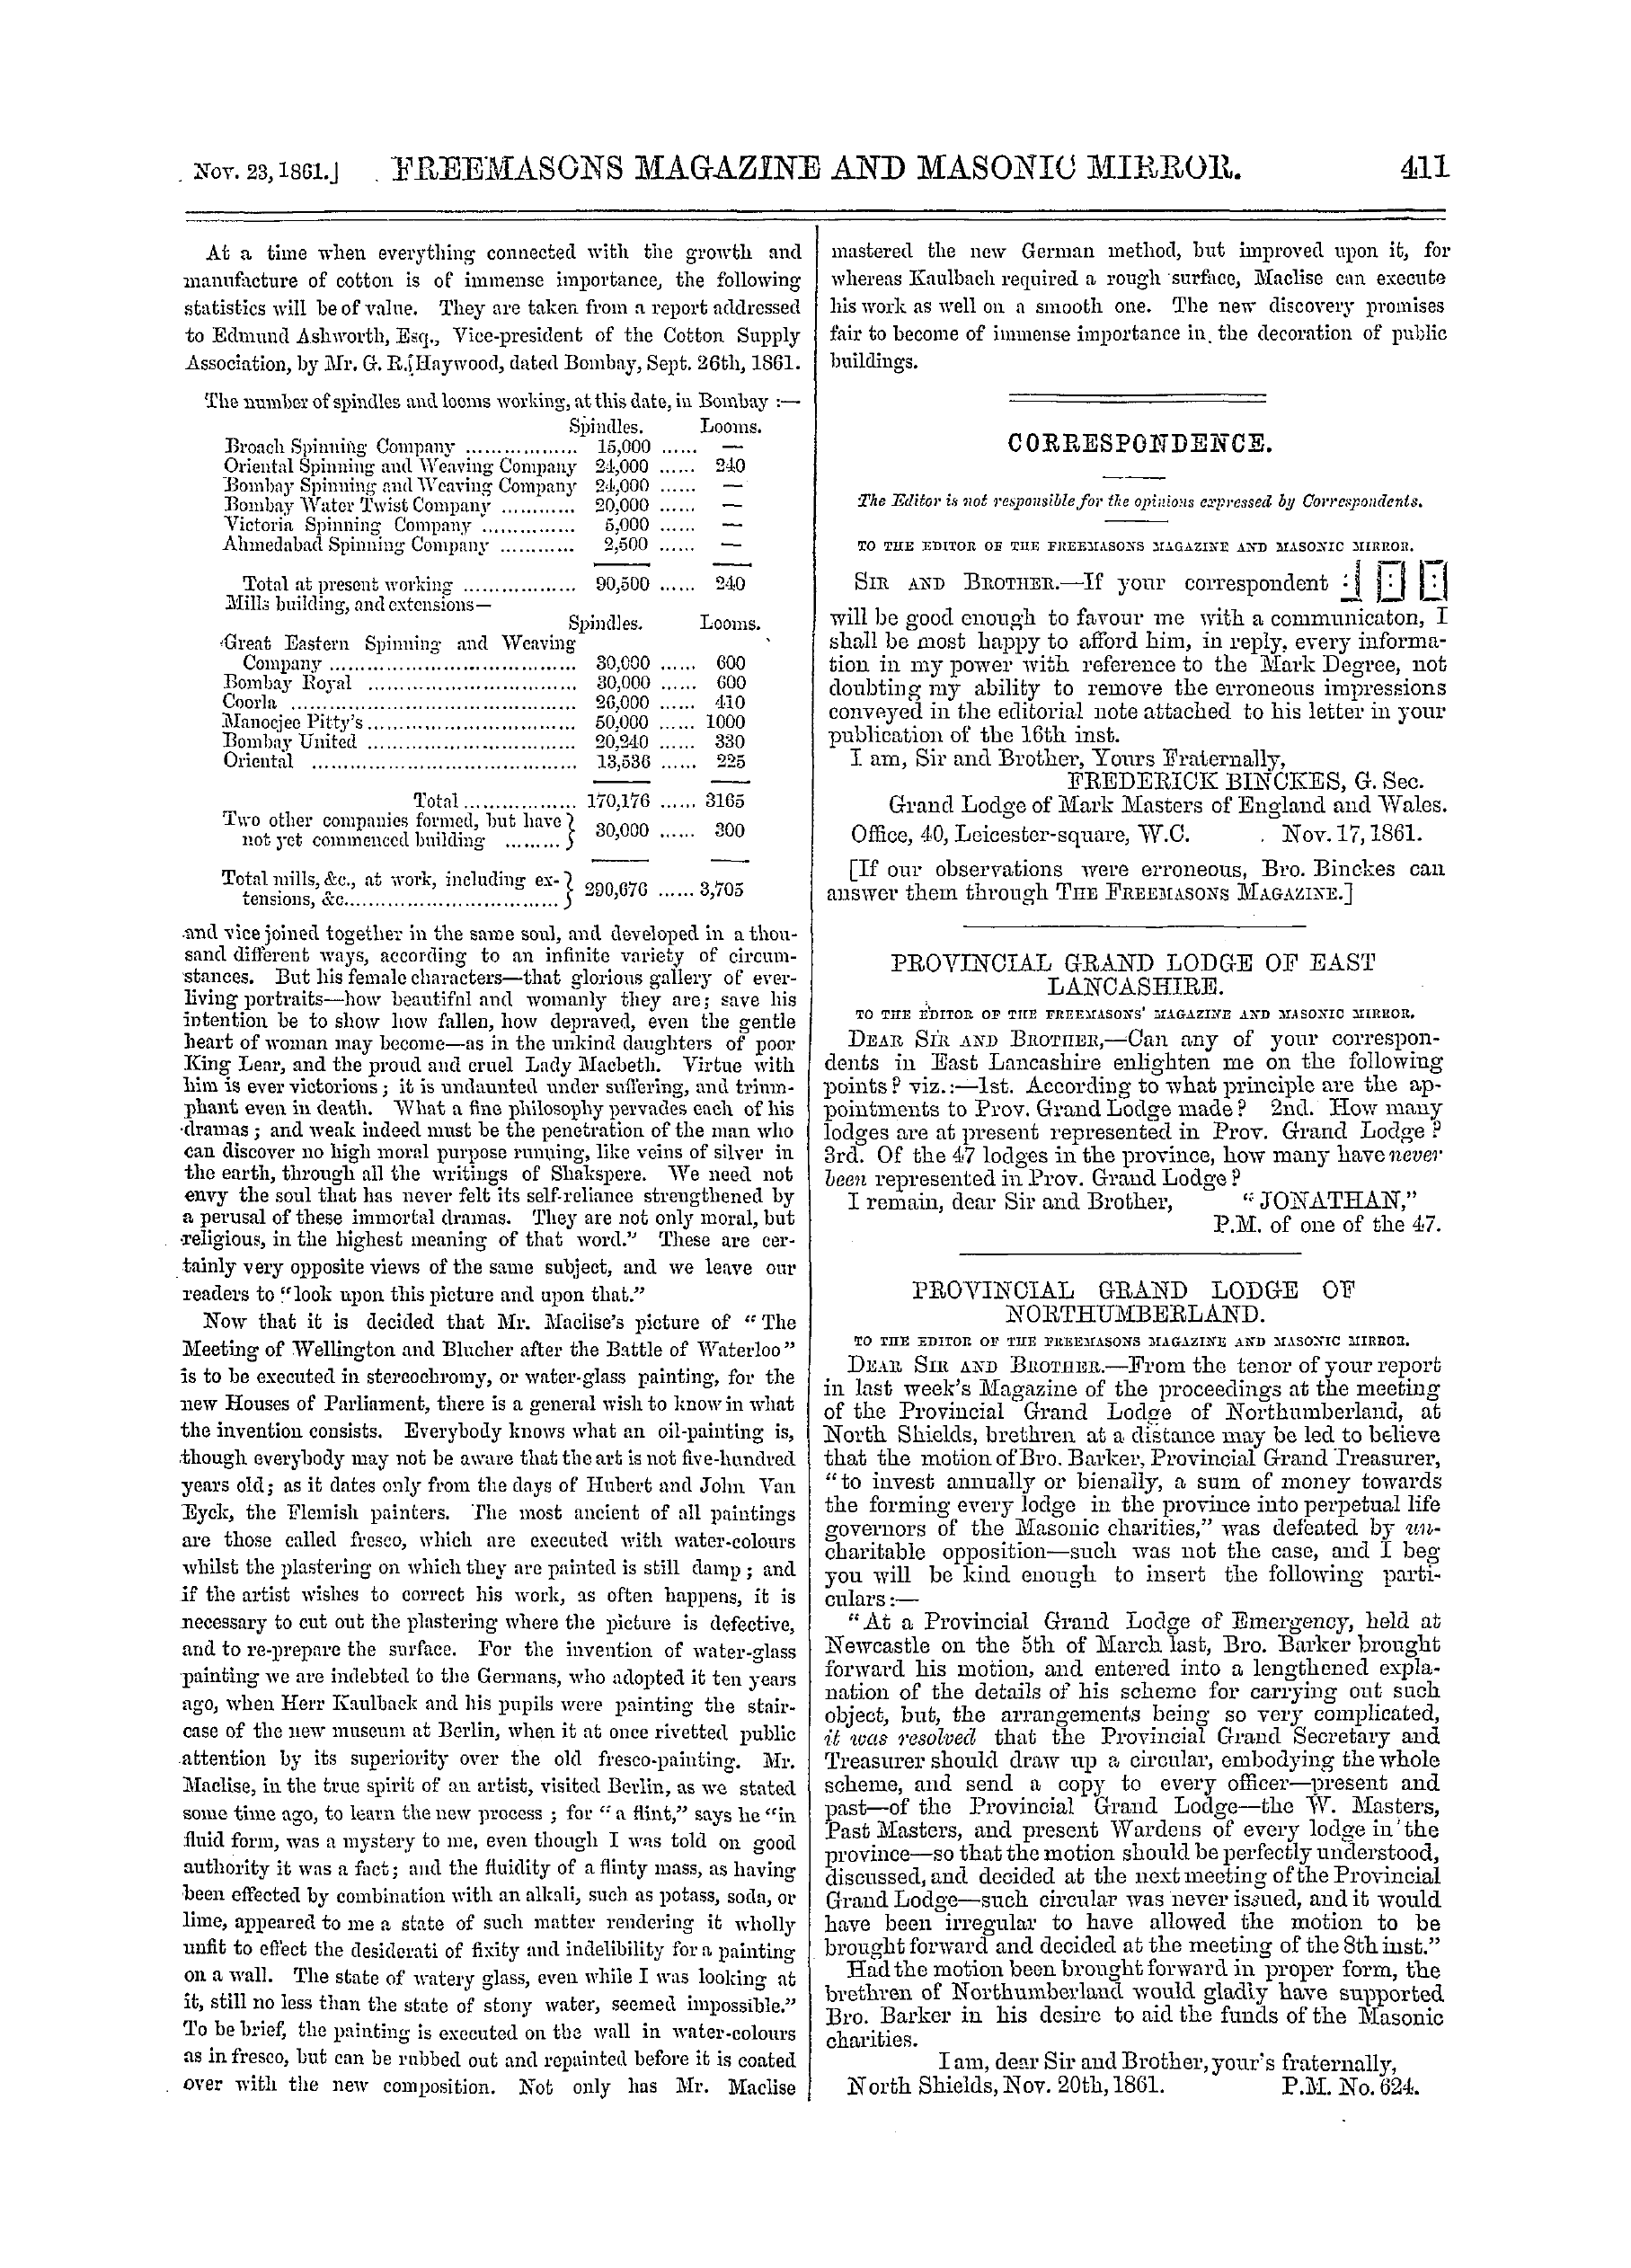 The Freemasons' Monthly Magazine: 1861-11-23: 11